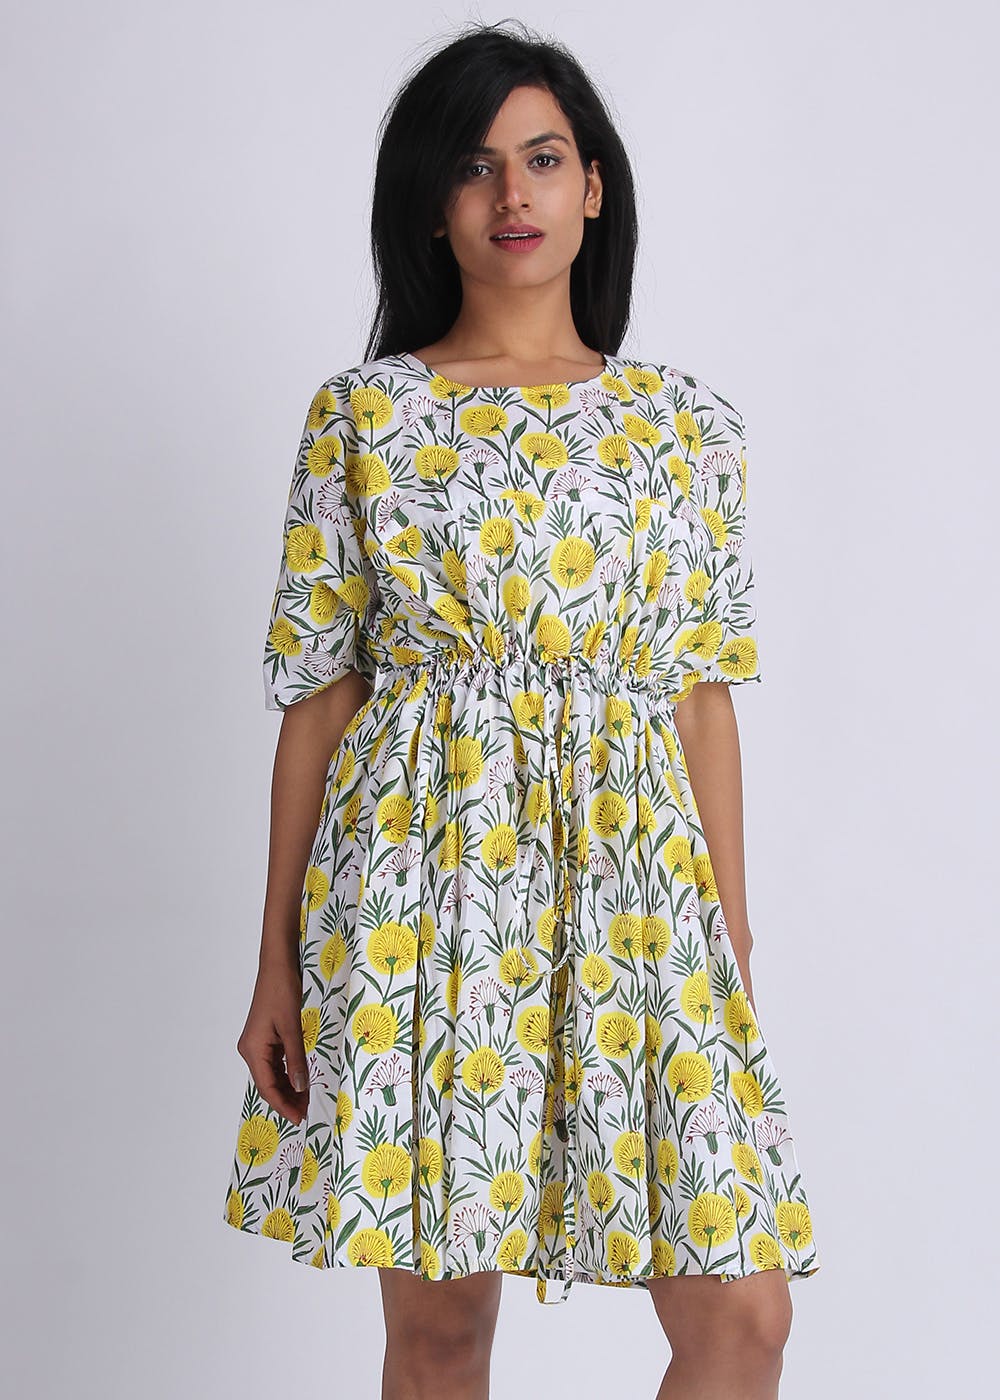 Get Marigold Printed Scrunch Waist Dress at ₹ 1100 | LBB Shop